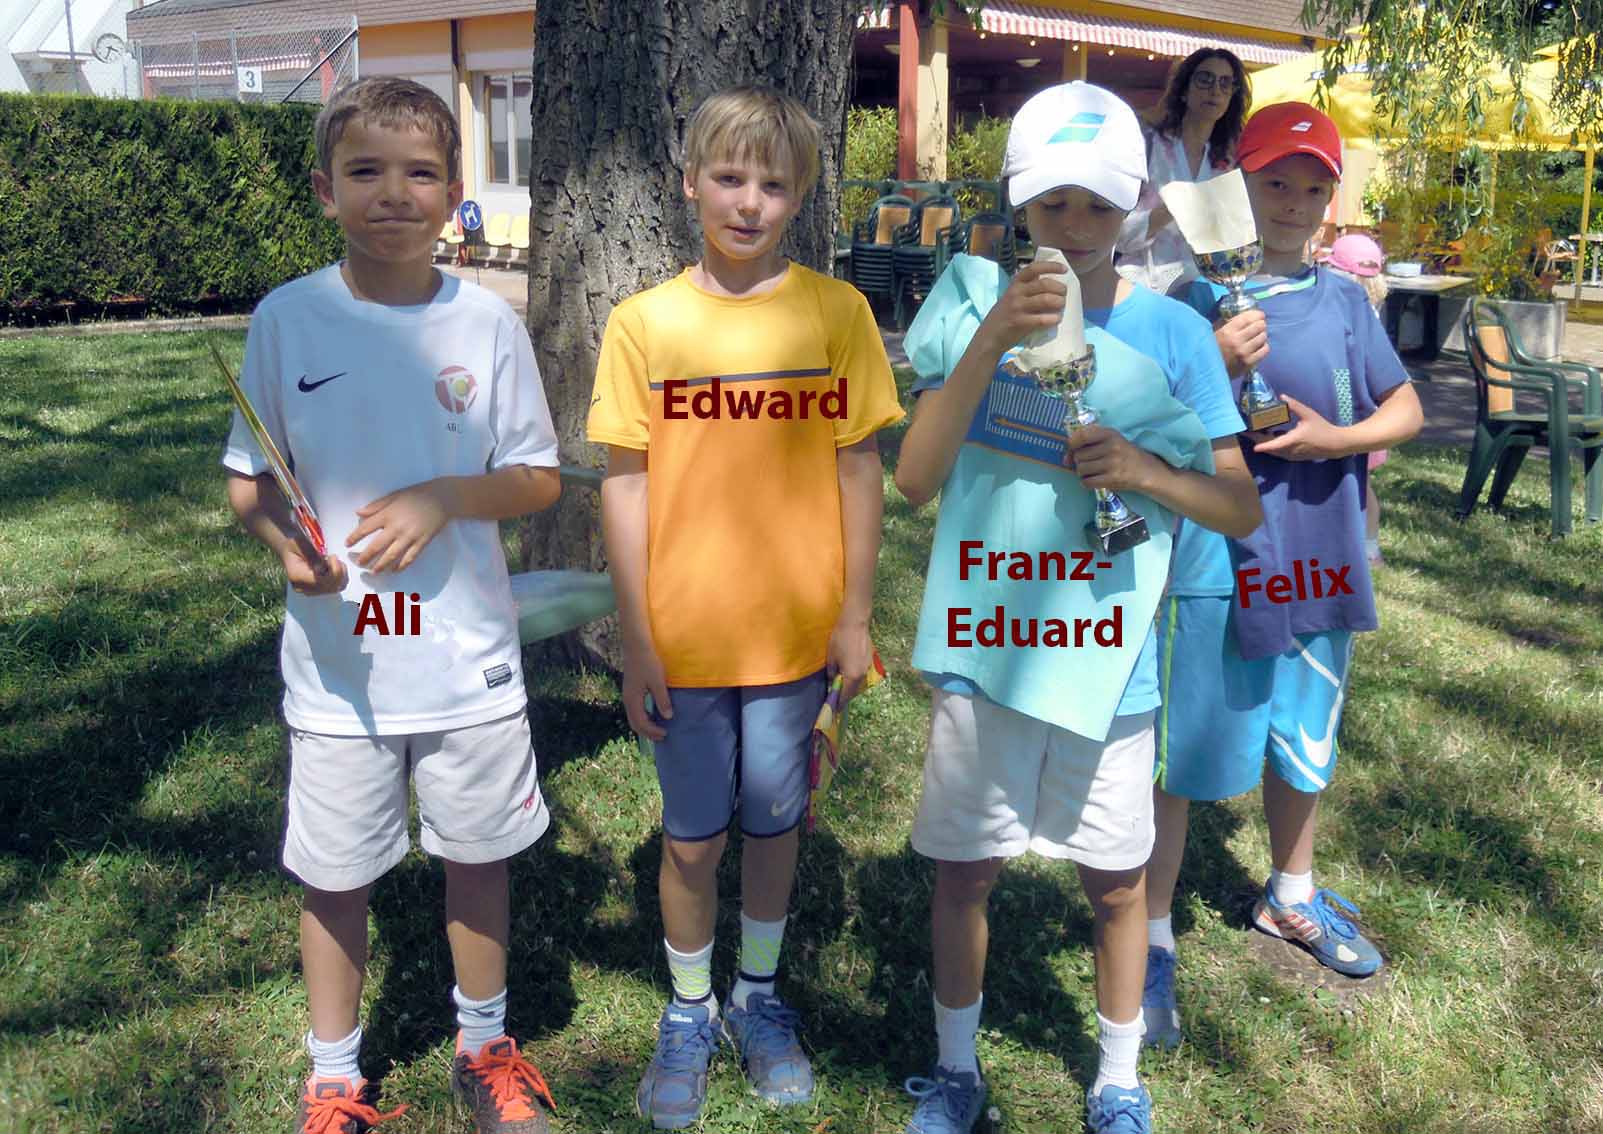 Ali, Edward, Franz-Eduard et Felix